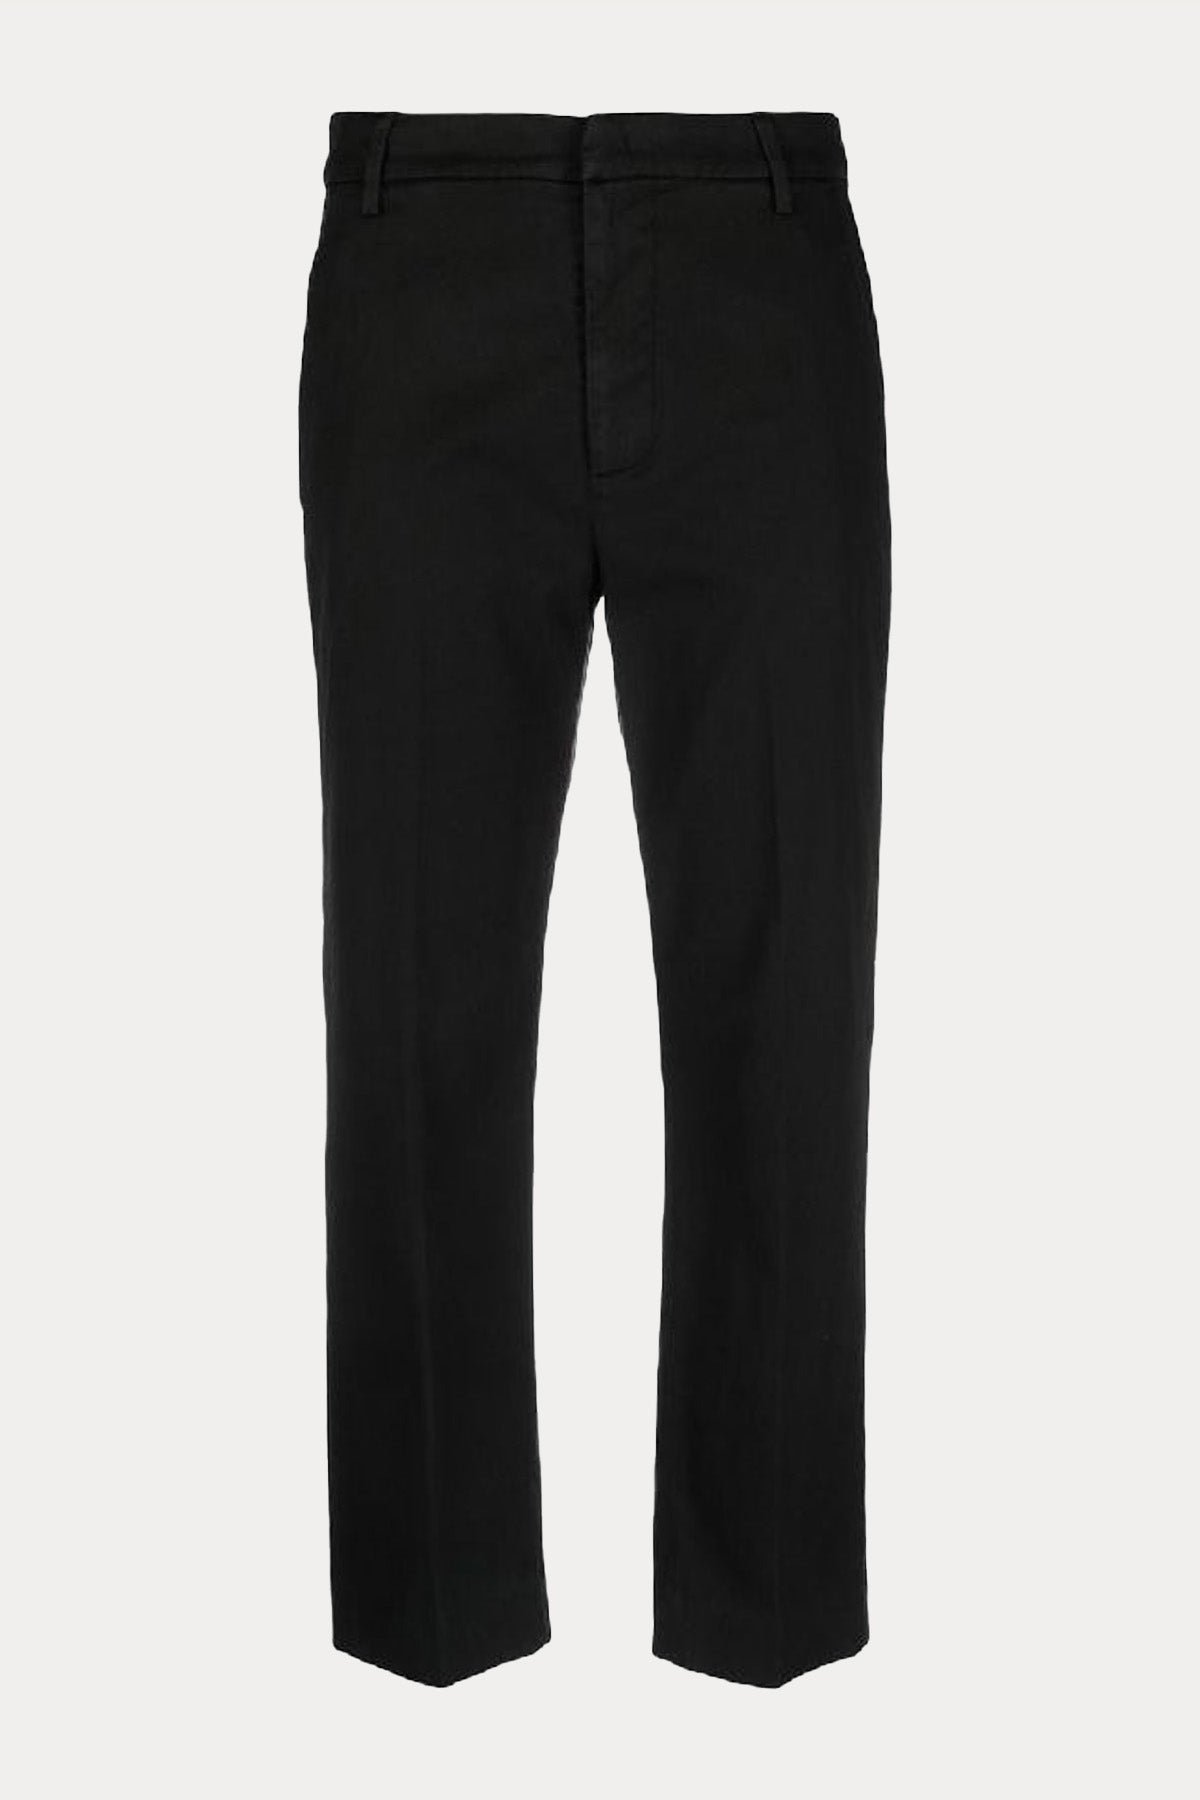 Dondup Slim Fit Yandan Cepli Pantolon-Libas Trendy Fashion Store